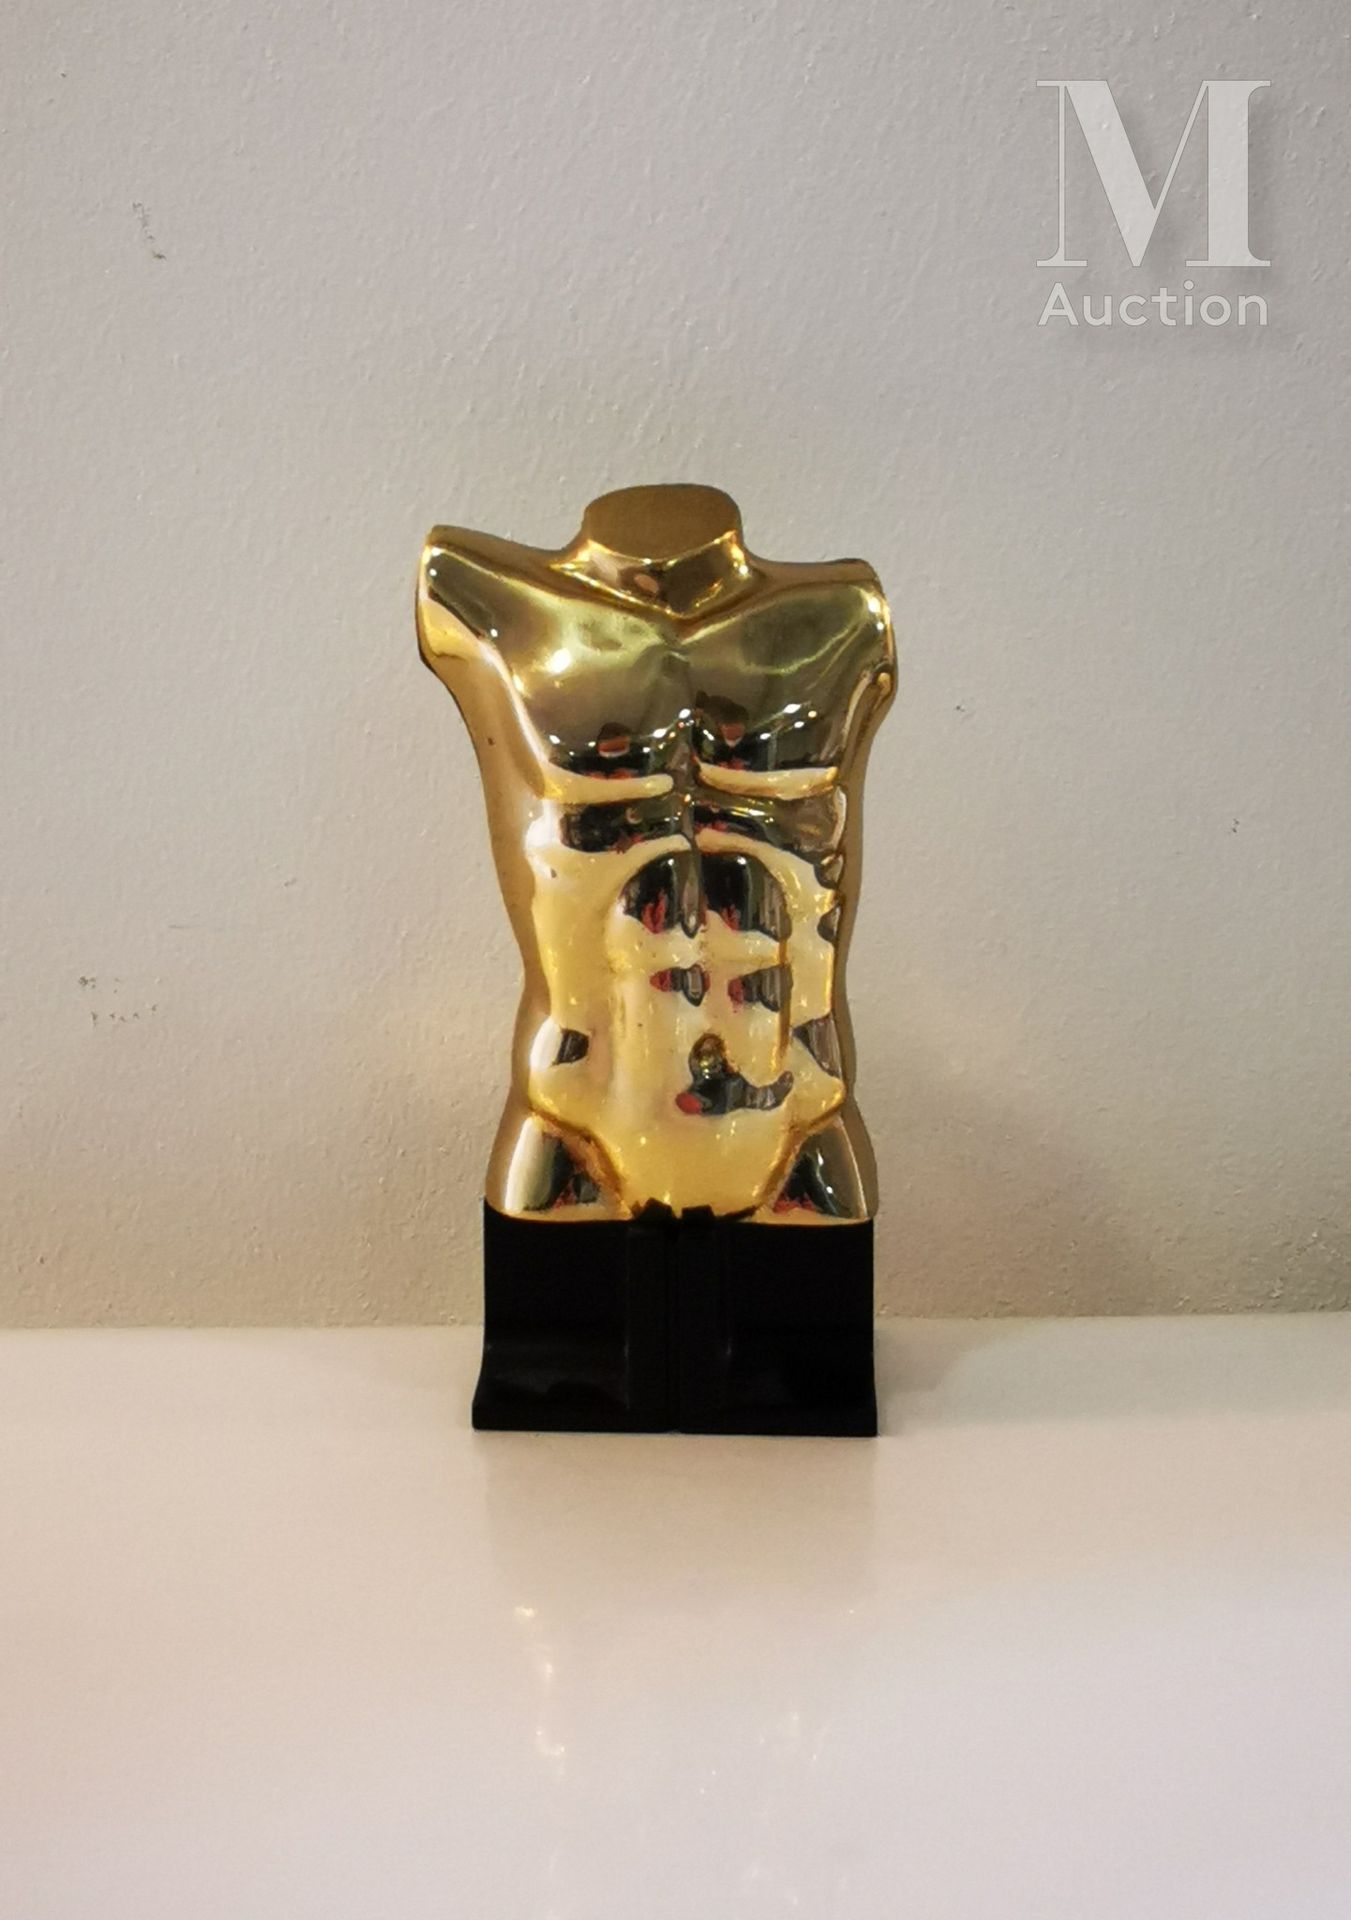 Miguel BERROCAL (1933-2006) Epigastrischer Torso - 1989

Skulptur aus vergoldete&hellip;